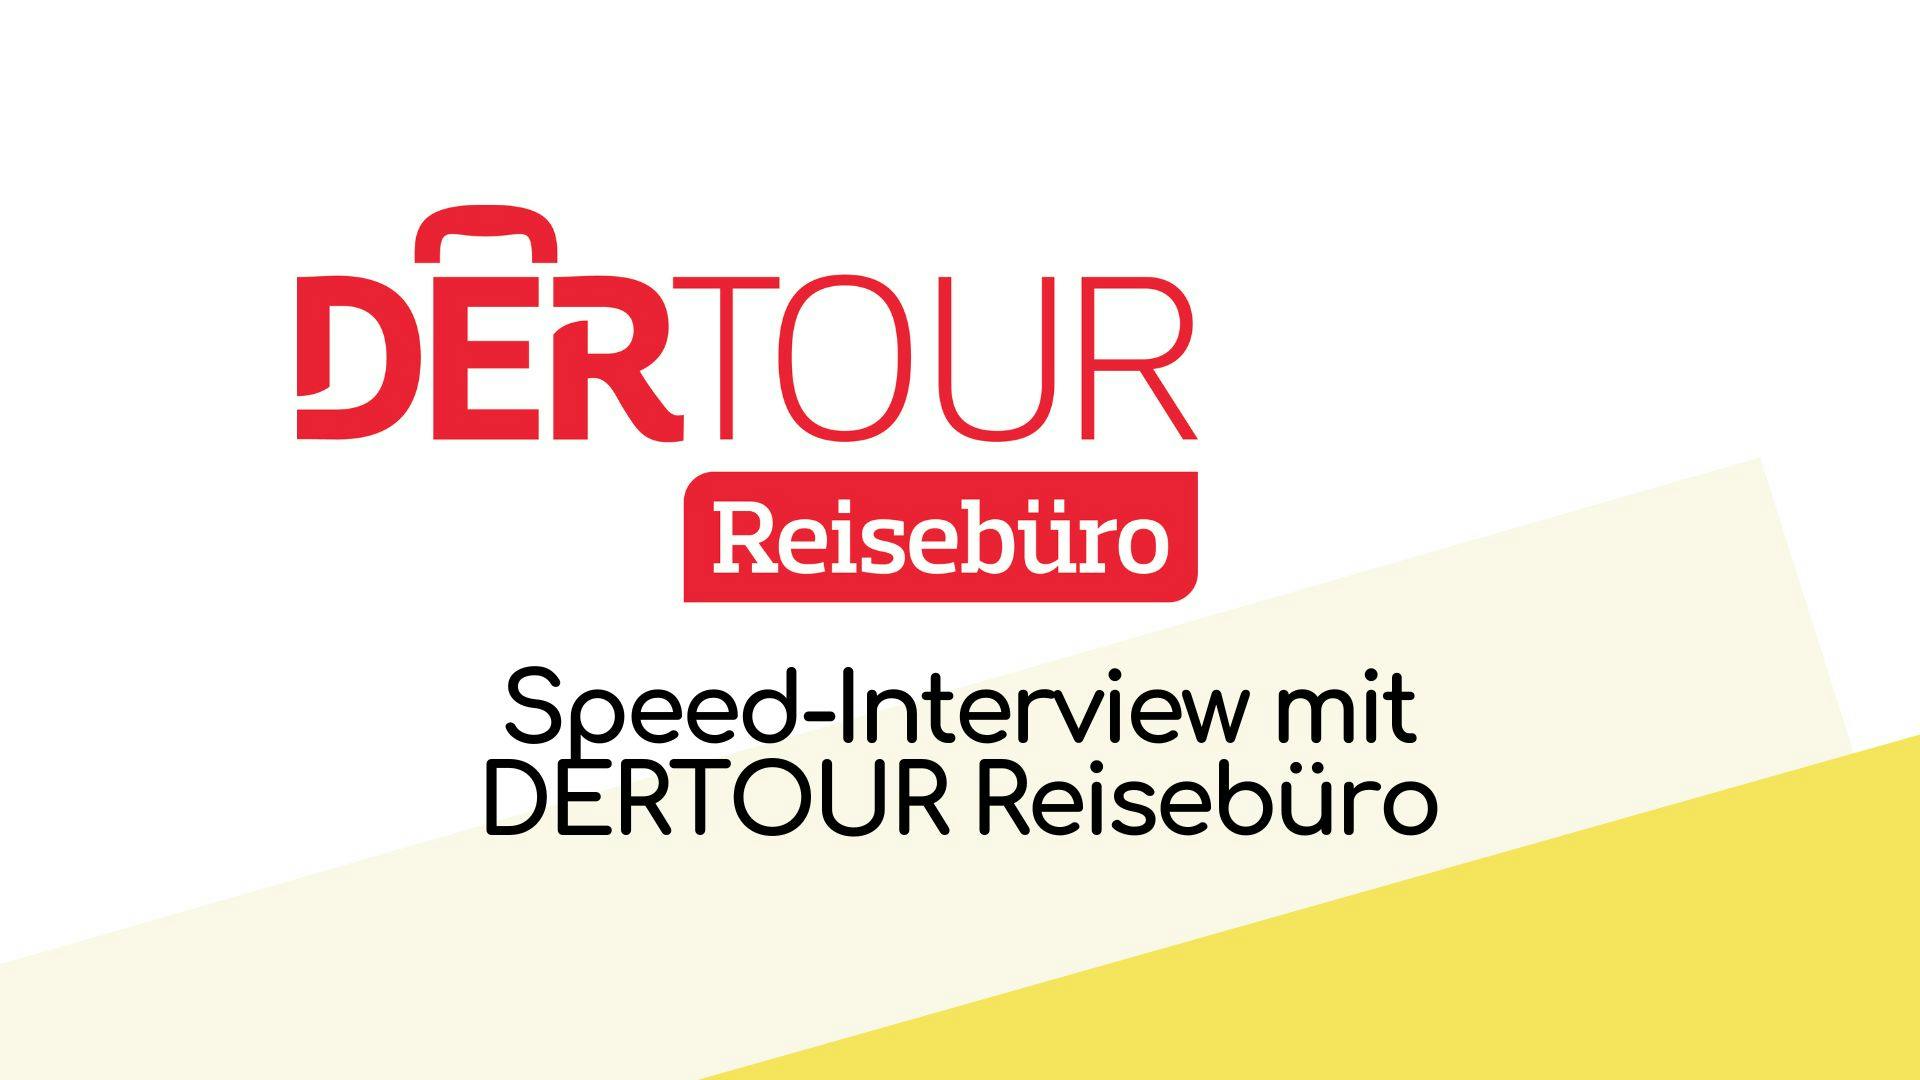 Speed-Interview mit DERTOUR Reisebüro